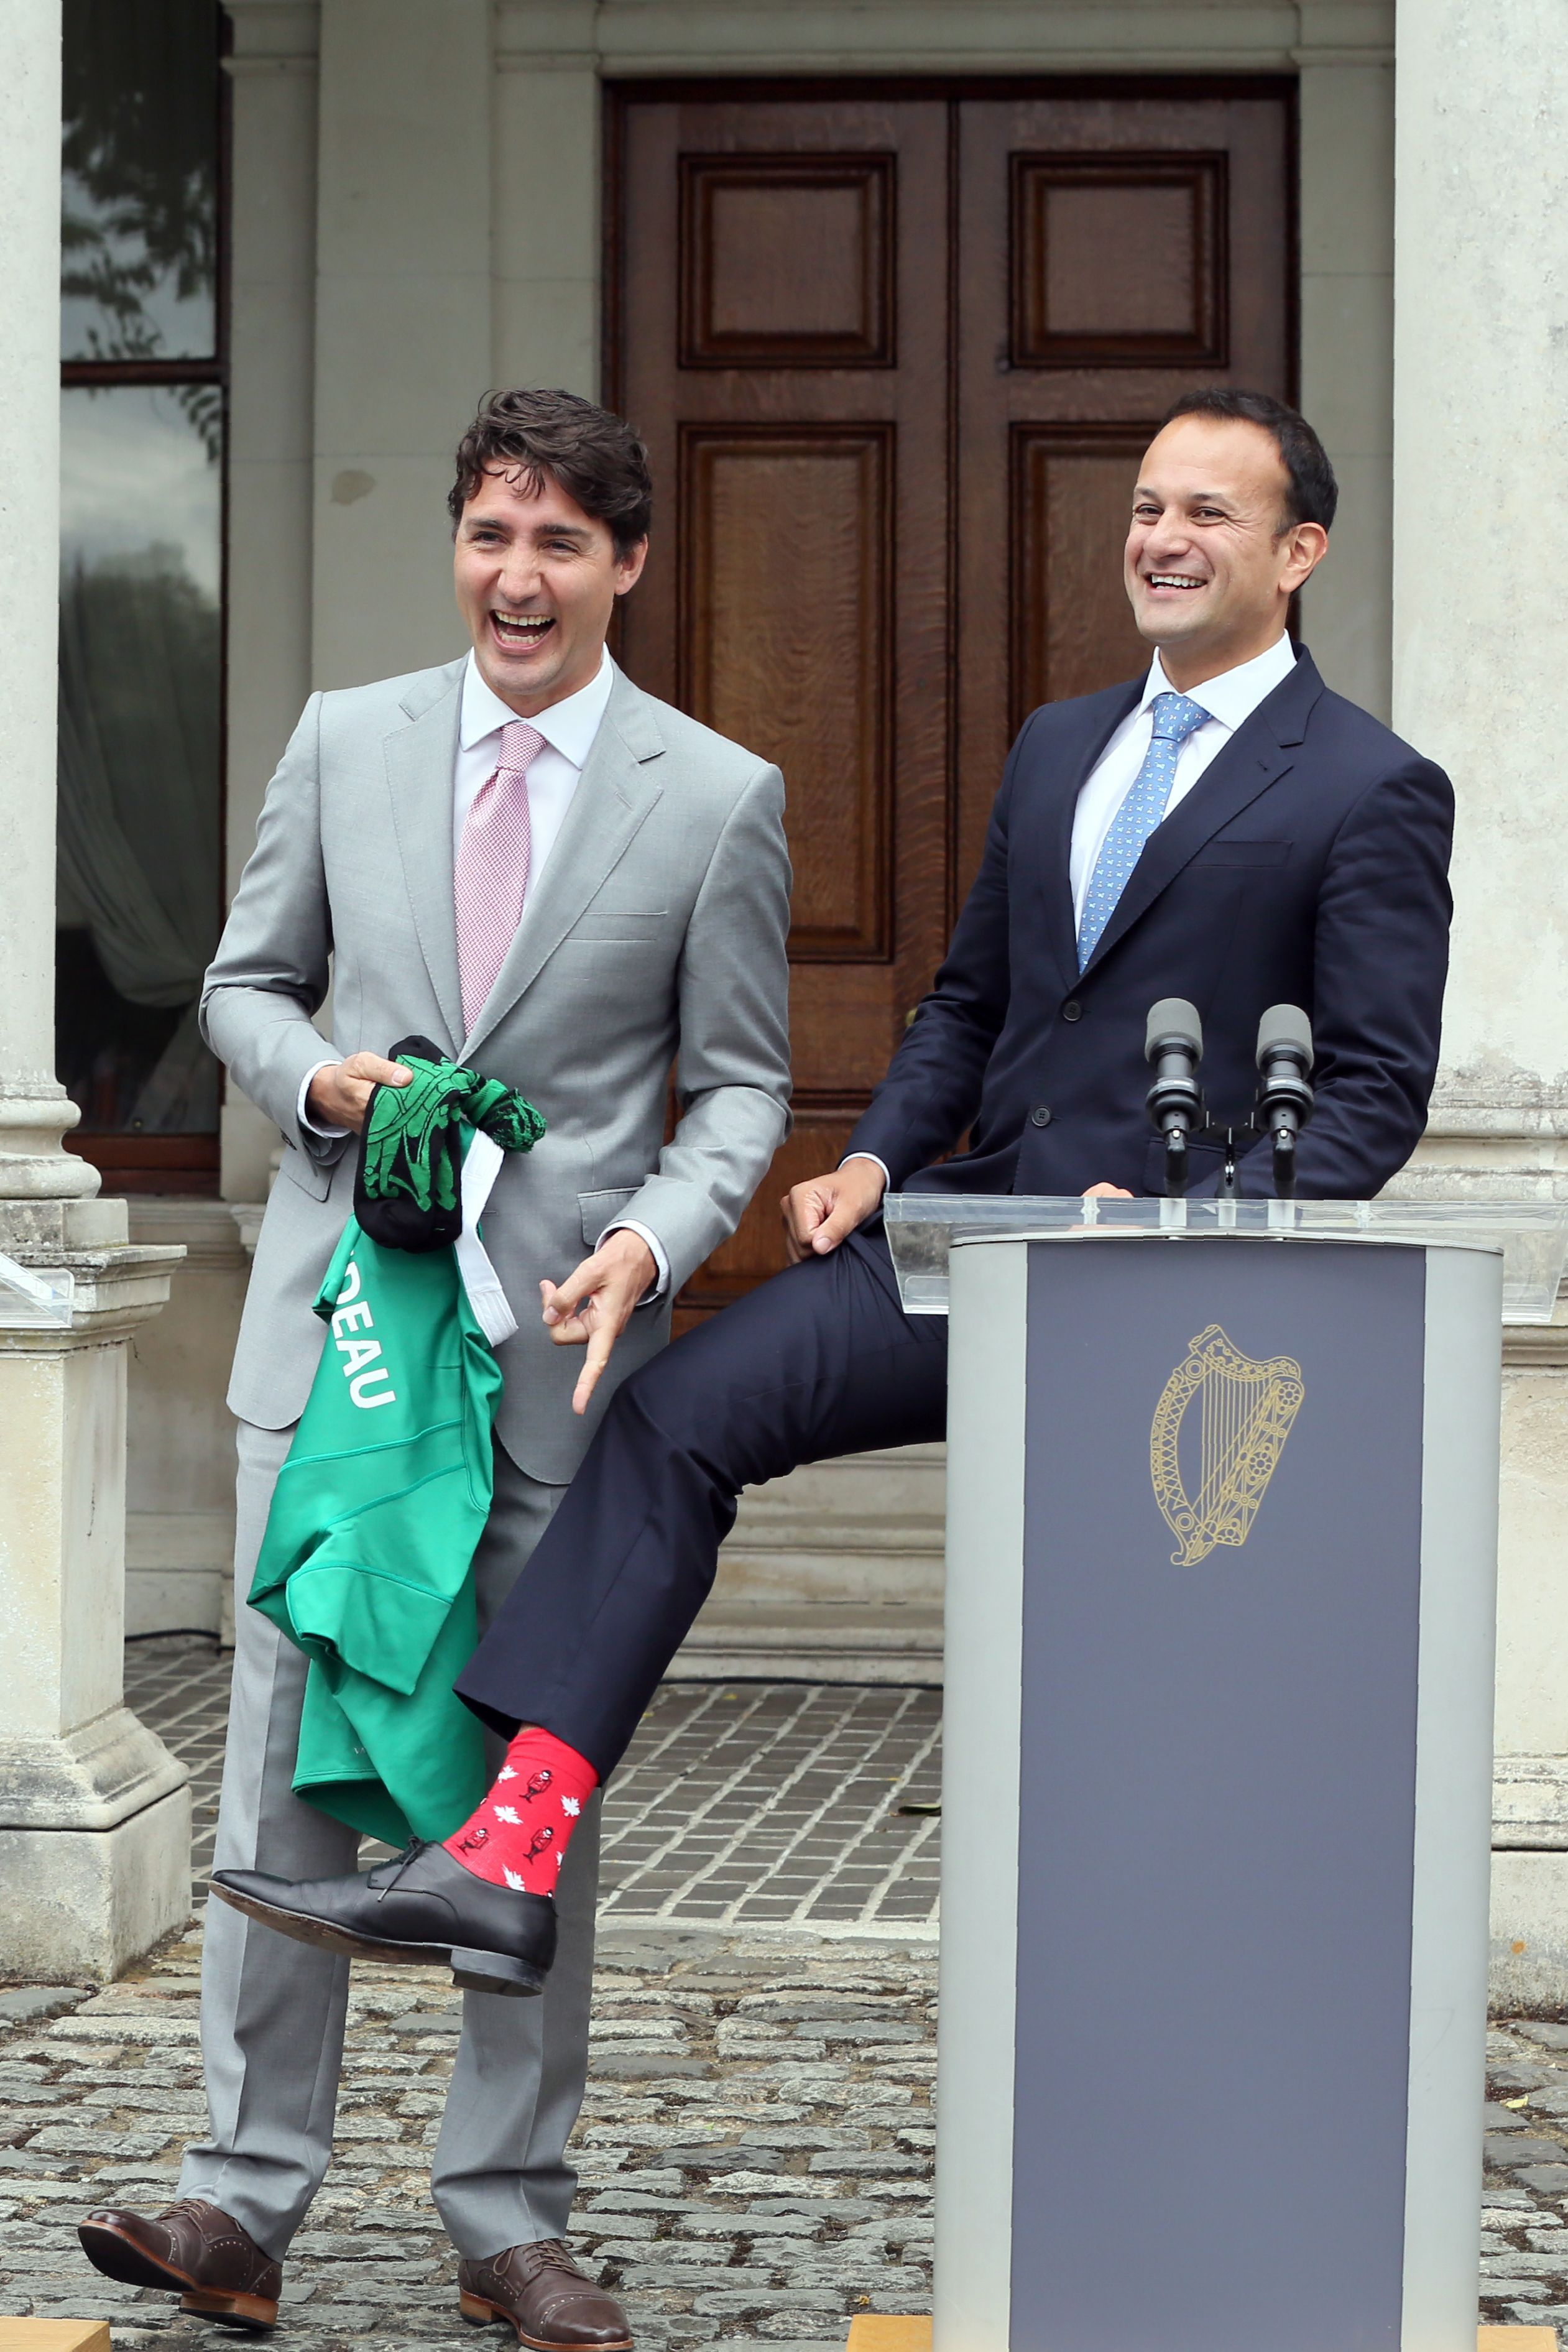 Politicians Wearing Stylish Socks - Justin Trudeau George Bush Bright Socks